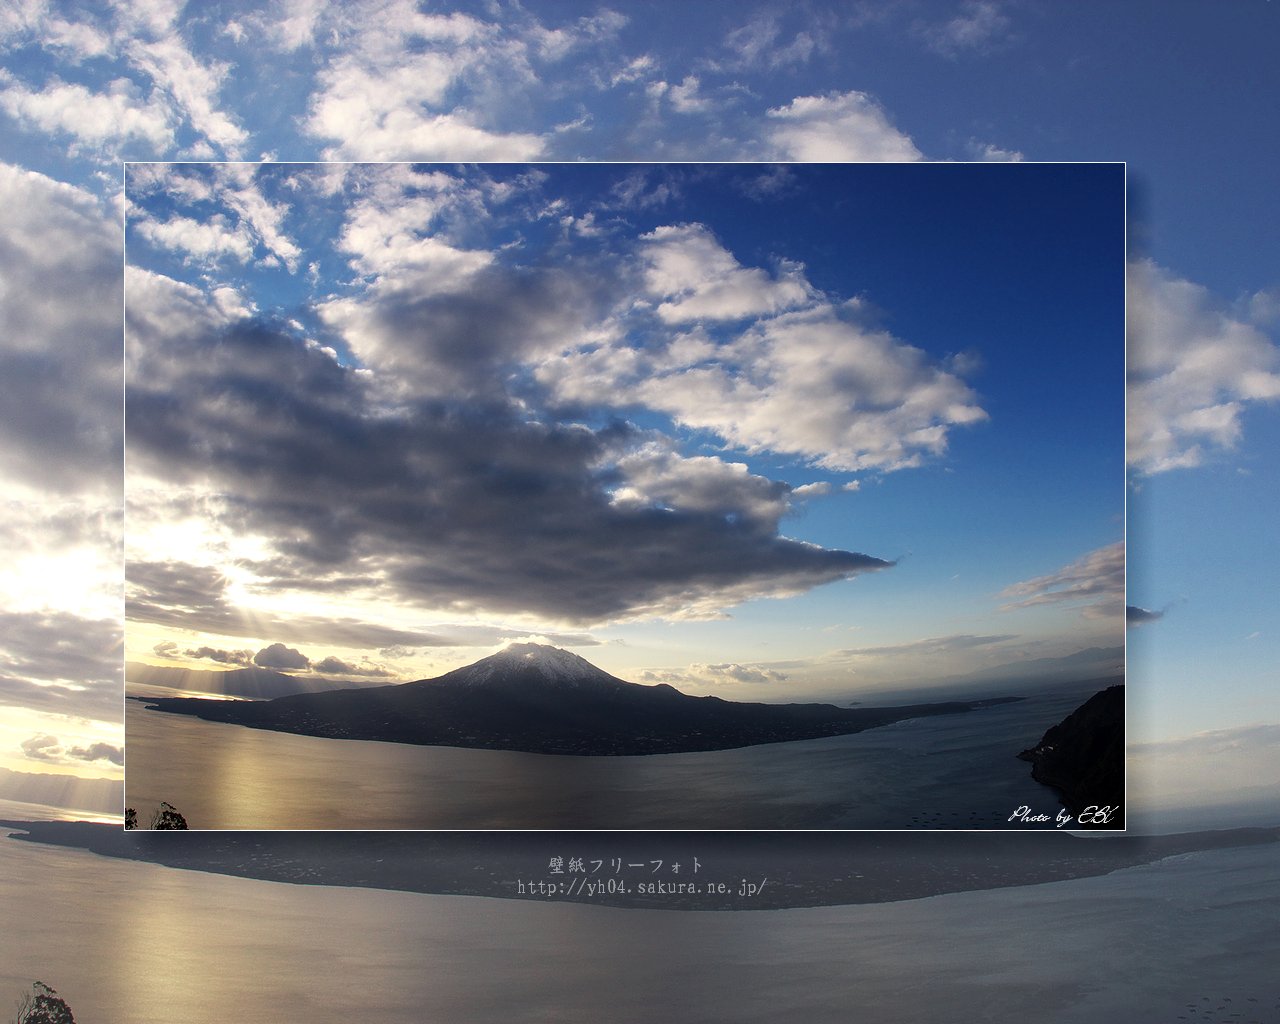 鹿児島市寺山公園から撮影した桜島をモチーフしました 「高画質＋高解像度(1280×1024)」デスクトップ無料壁紙」